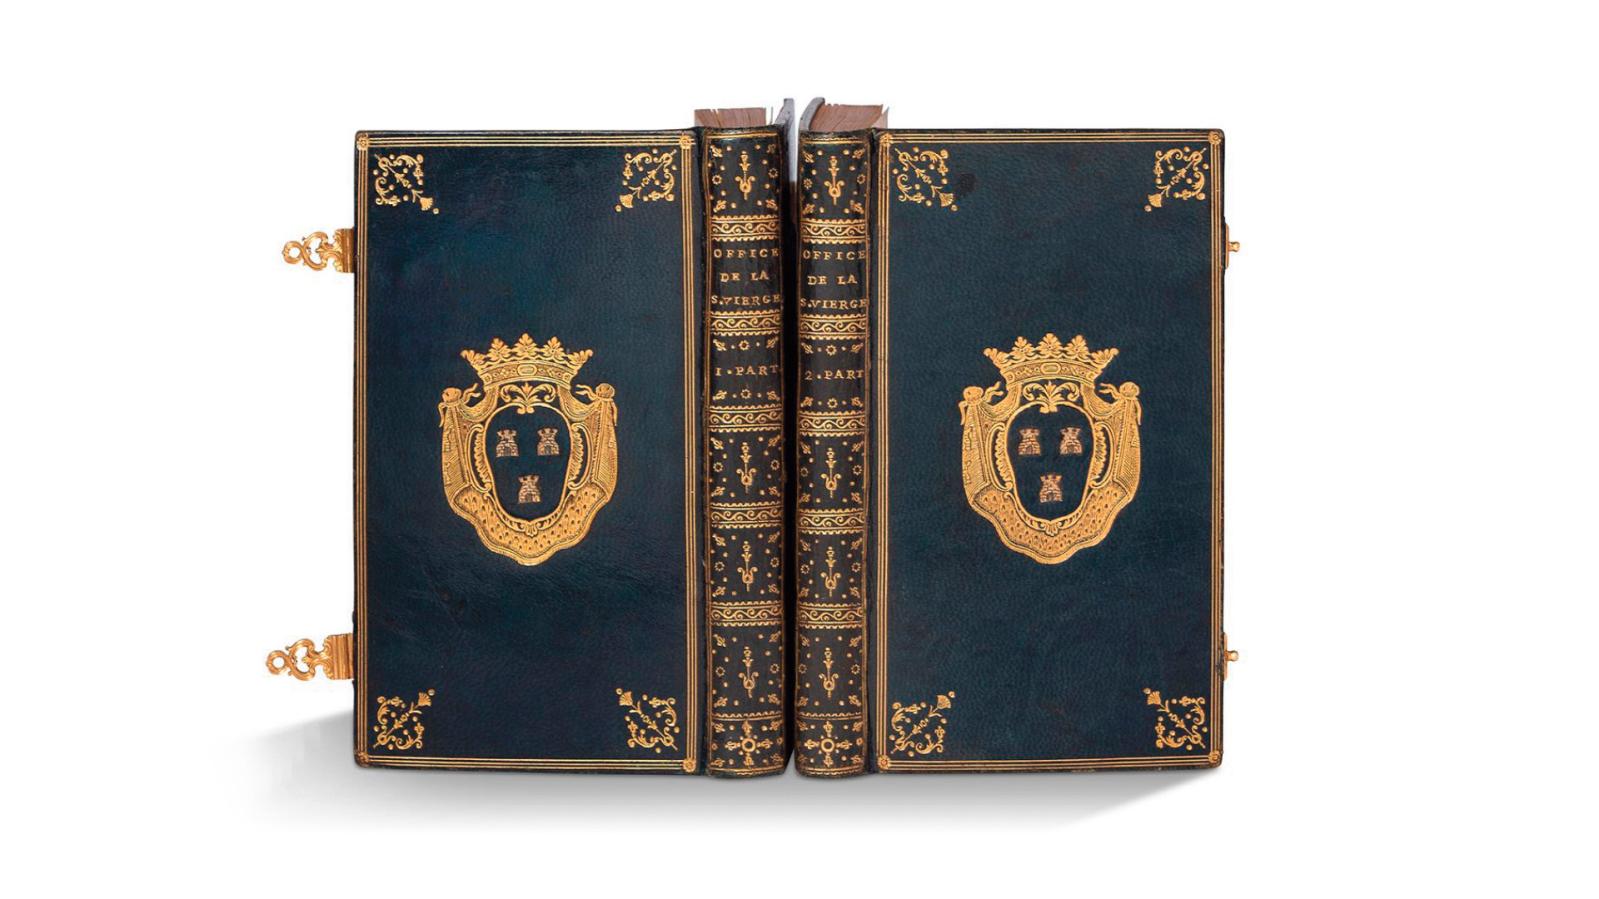 Office de la sainte Vierge pour tous les jours de la semaine, Paris, Imprimerie royale, 1757, deux volumes in-12, reliure en maroquin bleu